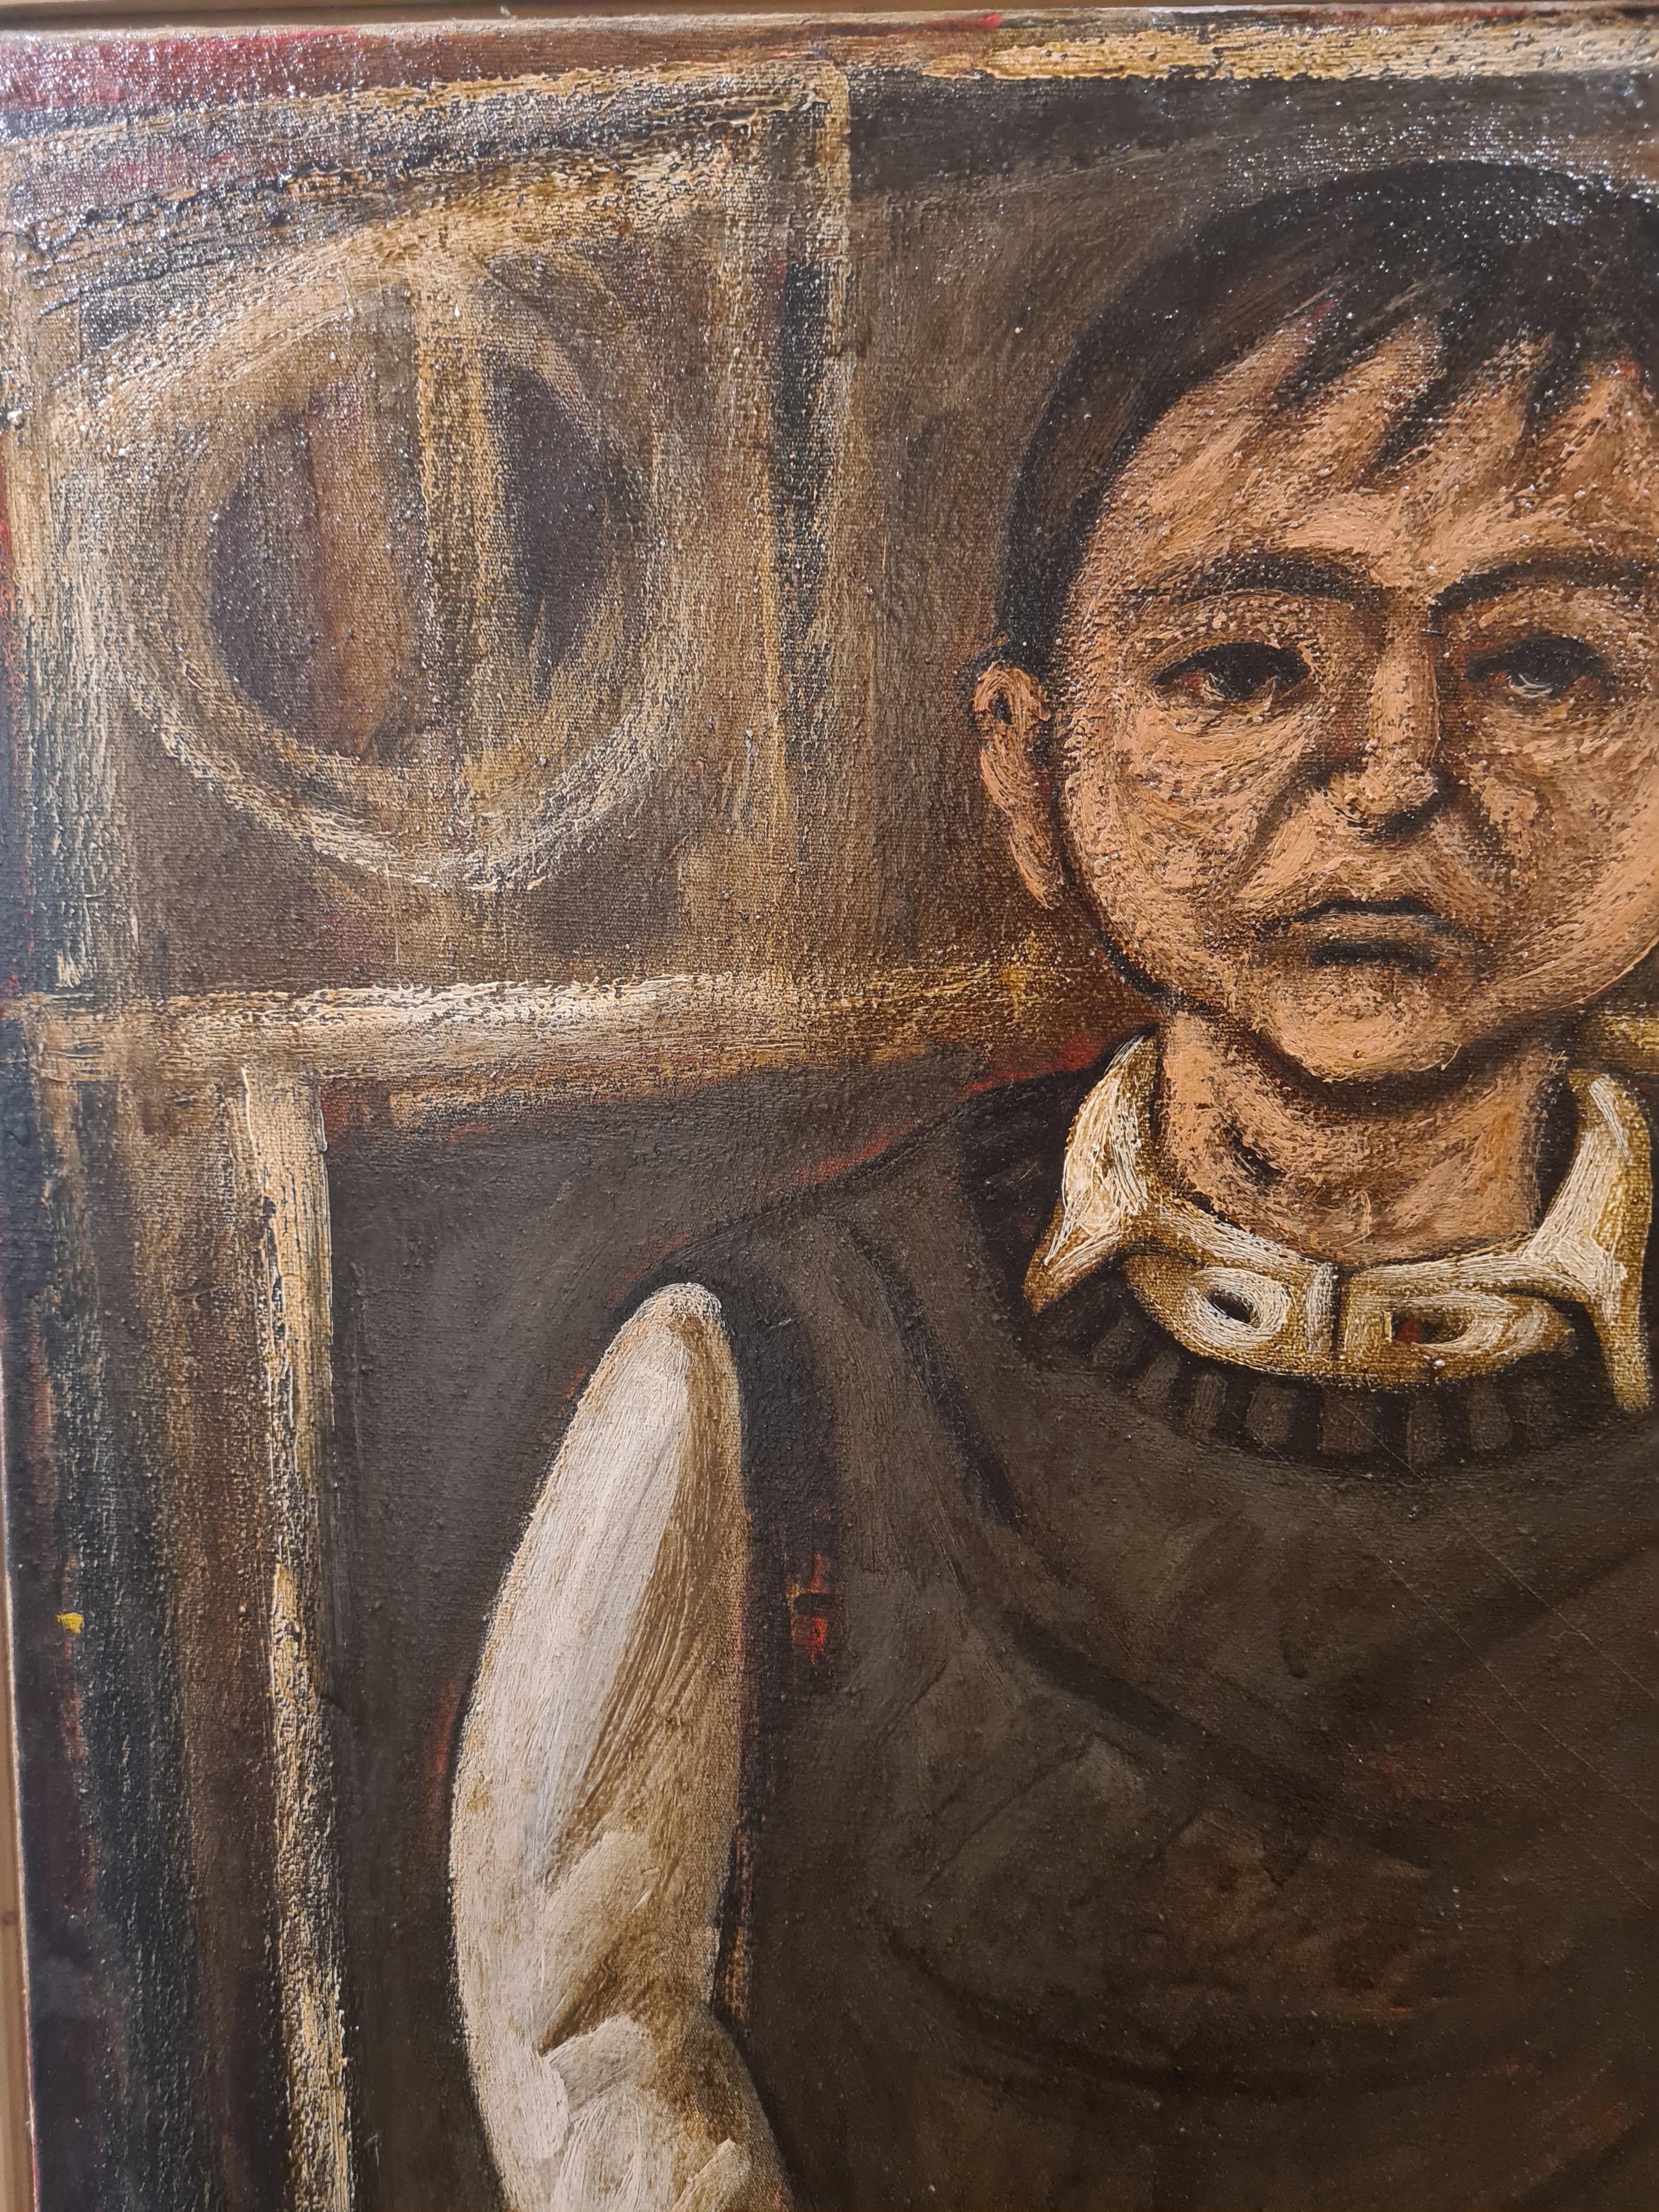 Grand portrait à l'huile sur toile de l'école de Glasgow réalisé par l'artiste écossais Stuart Mackenzie. Le tableau est présenté dans un cadre en bois bâton uni.

Bien qu'il ne soit pas signé, le tableau a été acquis directement auprès de l'artiste